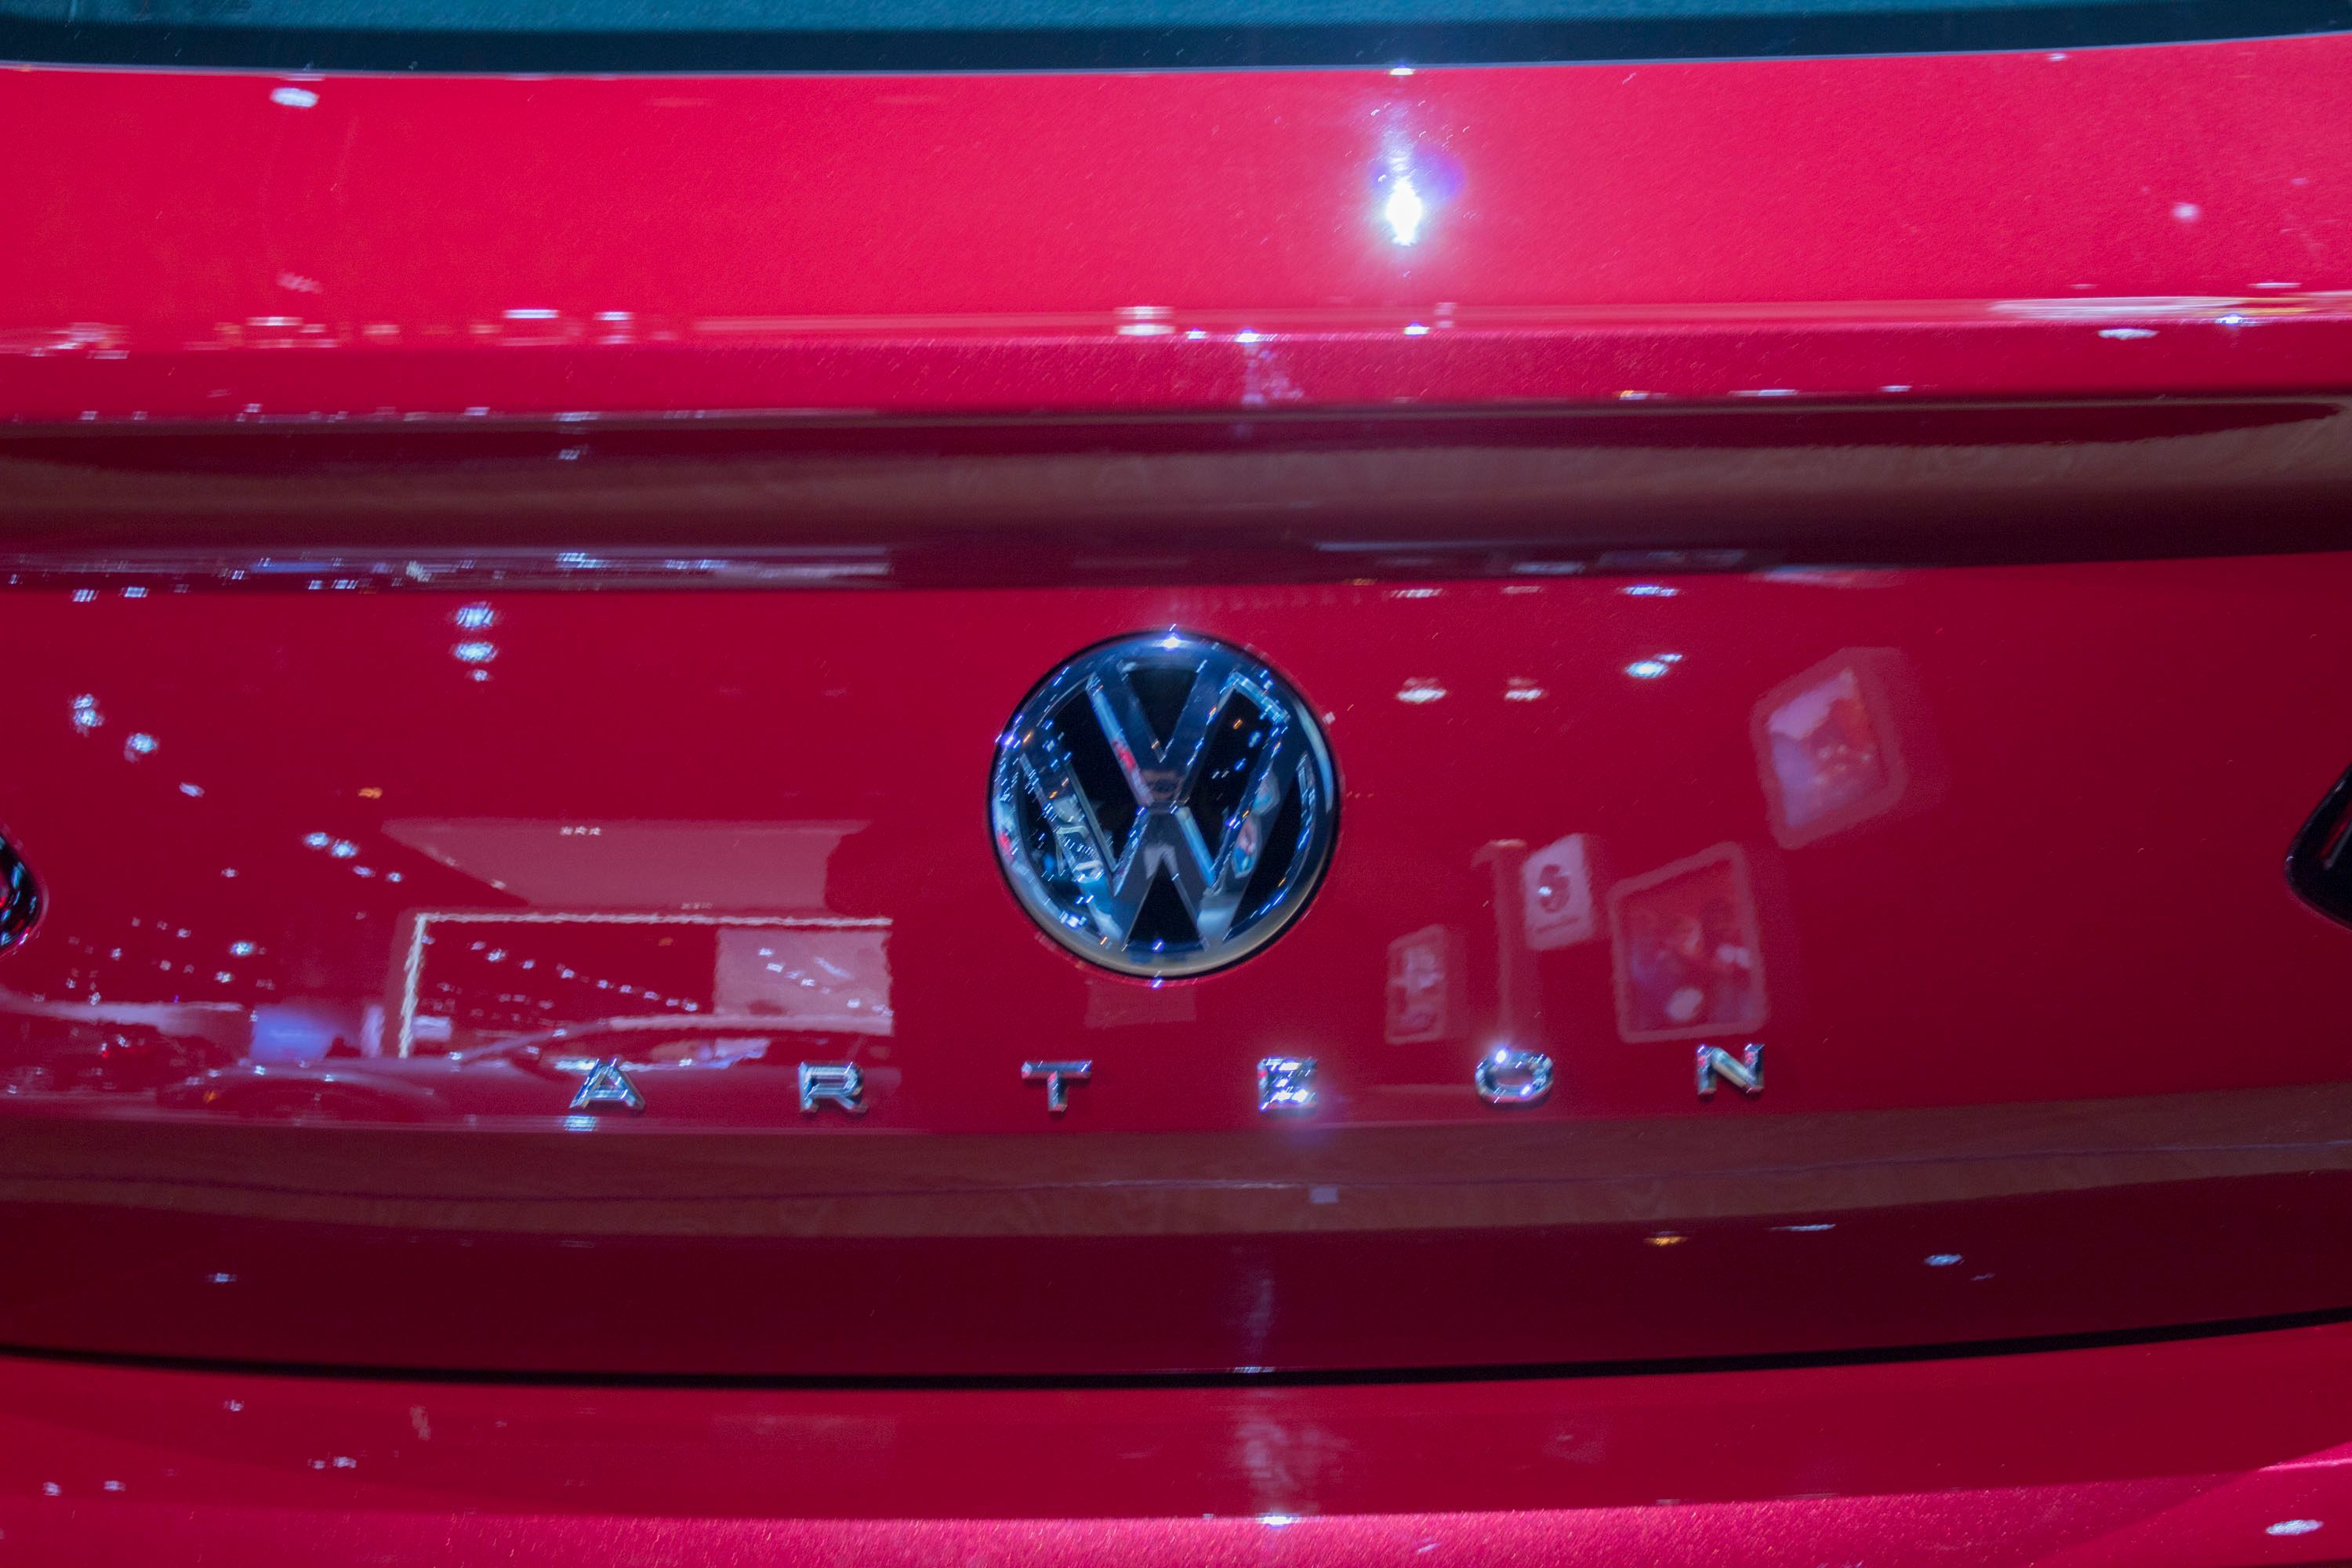 2018 Volkswagen Arteon